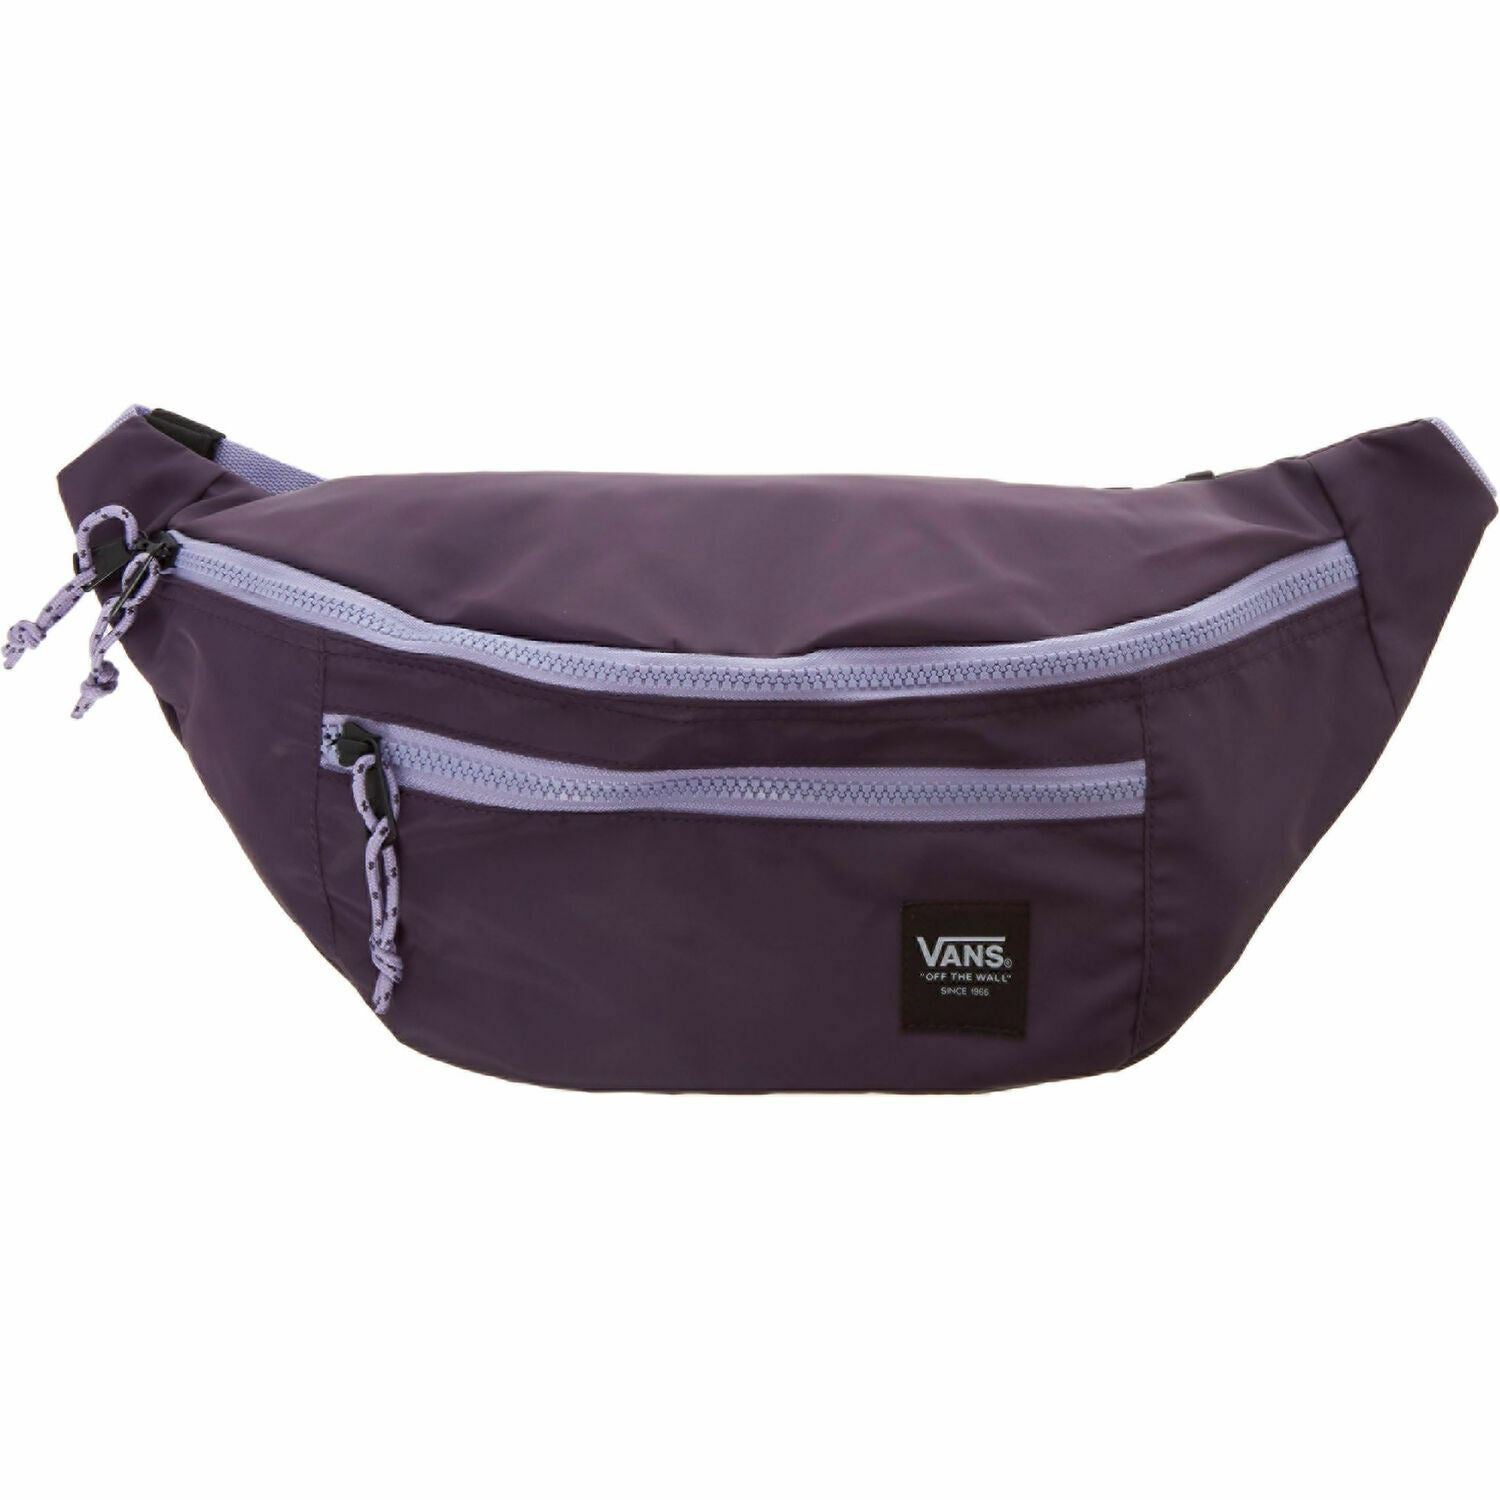 Vans Women's Purple Ranger Waist Pack / Bum Bag